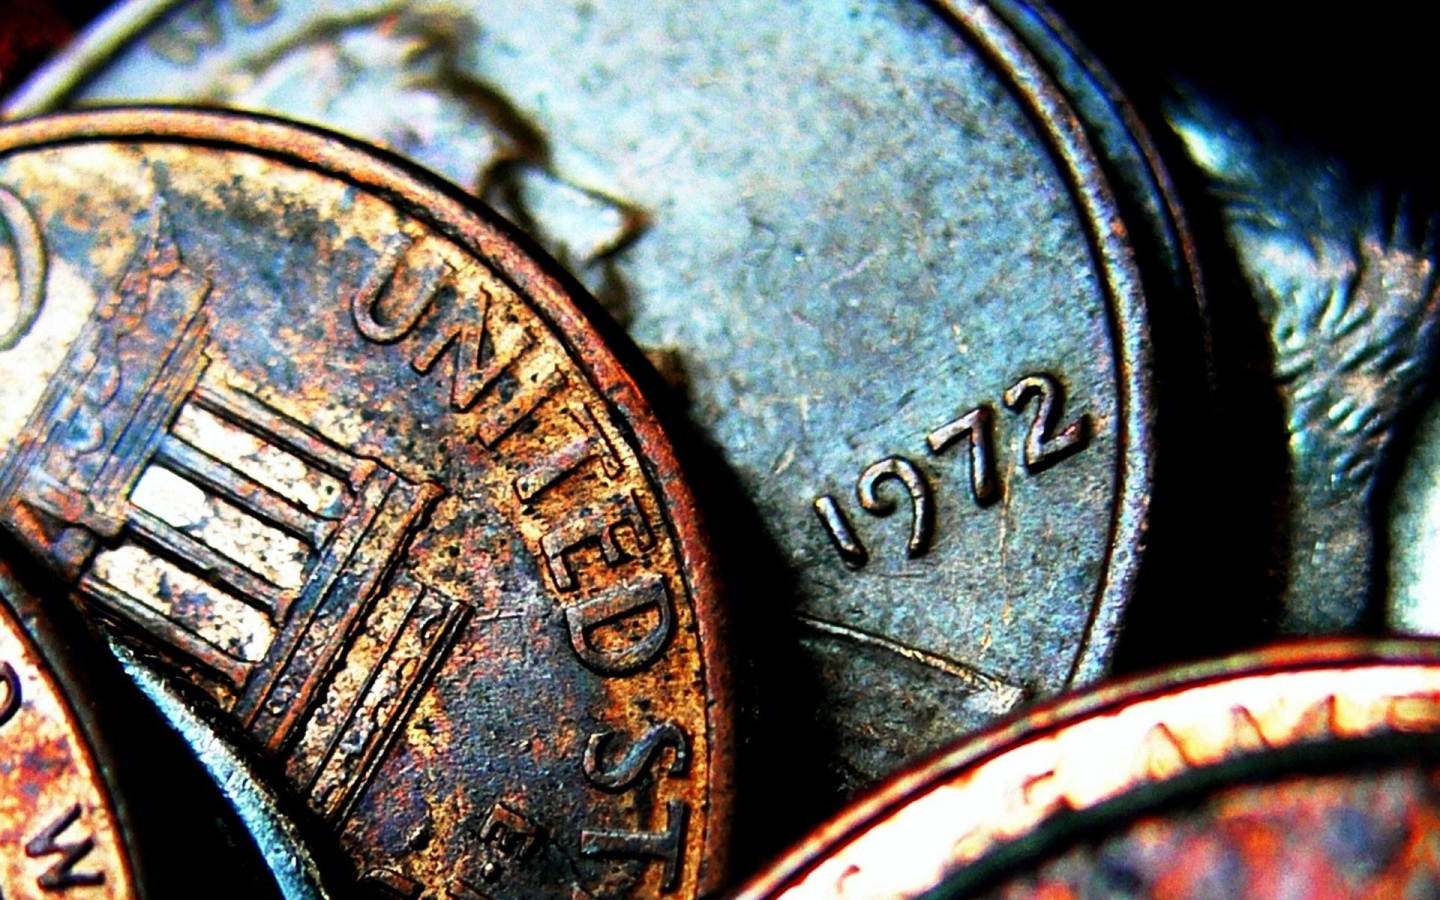 Старые монеты из США